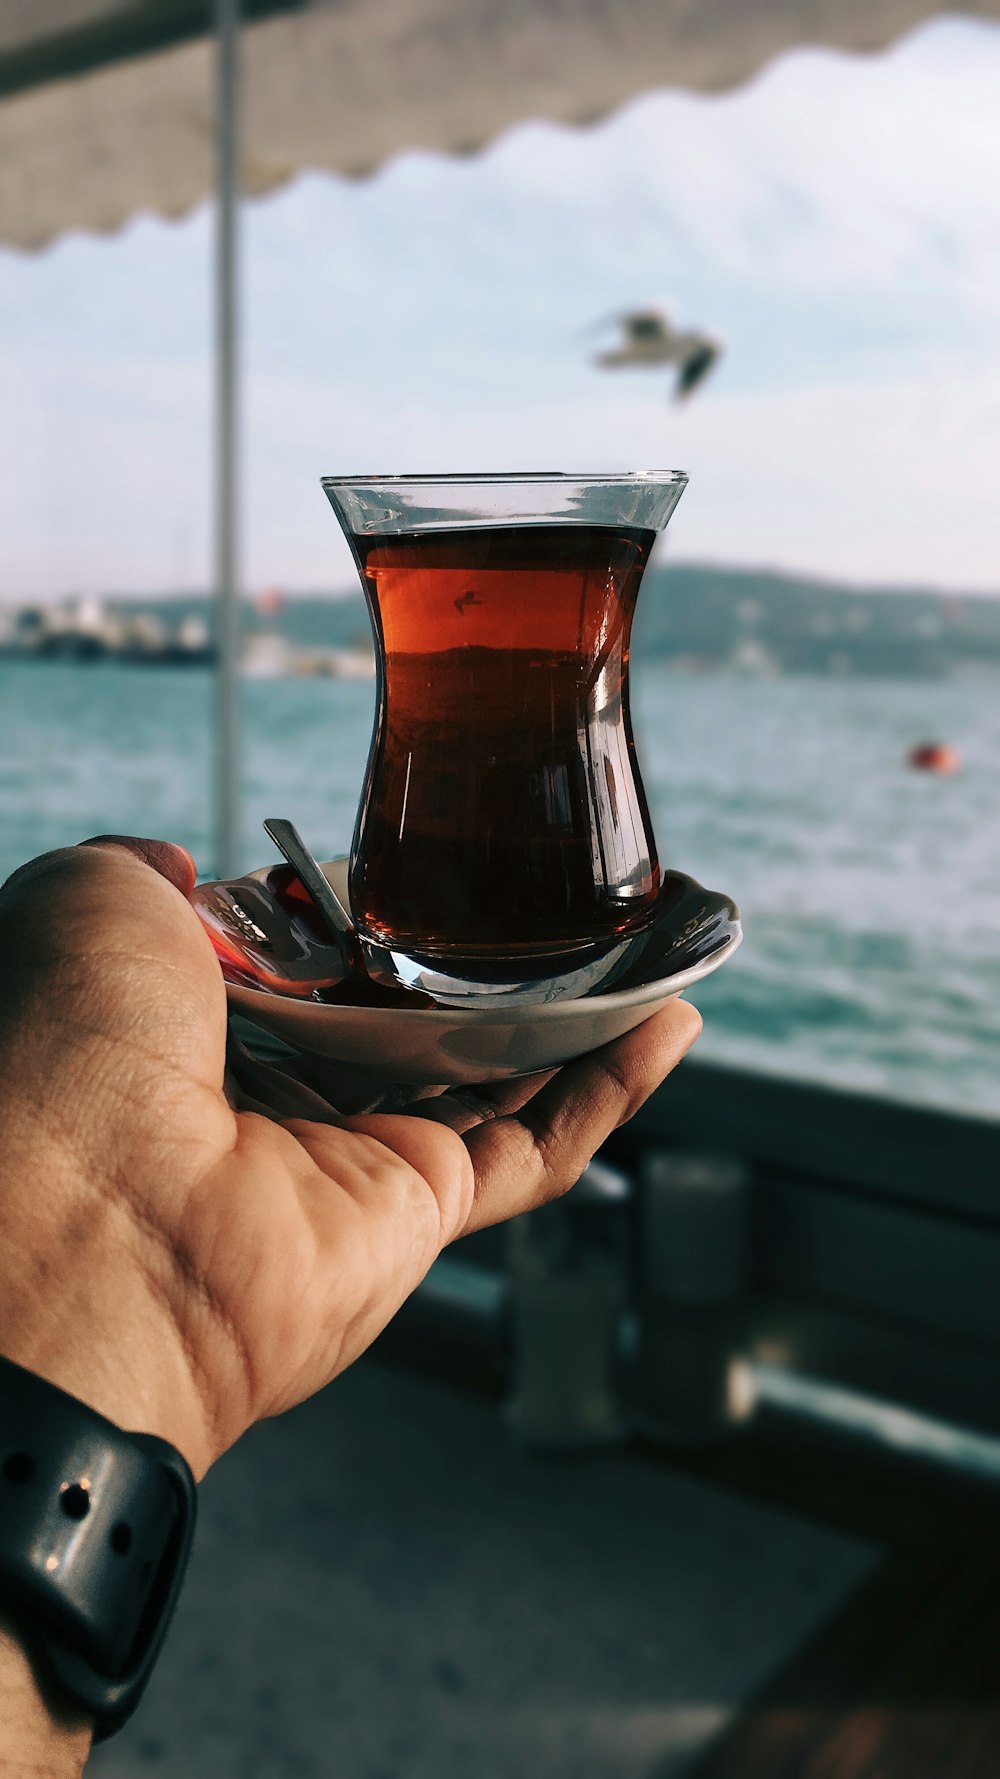 Copo de chá turco na palma da mão da pessoa